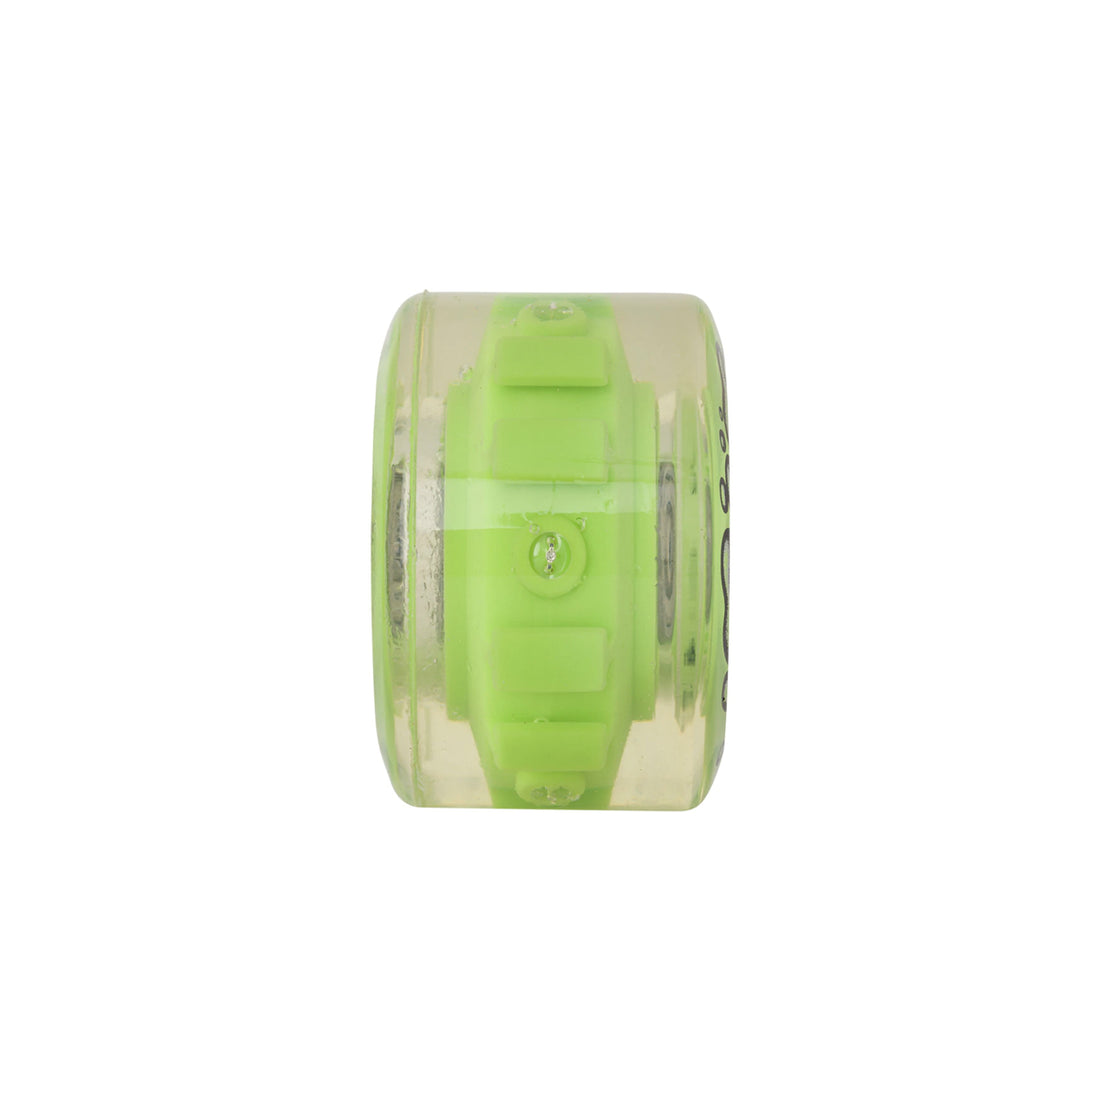 Slime Balls OG Light Ups with Green LED and Bearings 60mm 78A Wheel Pack